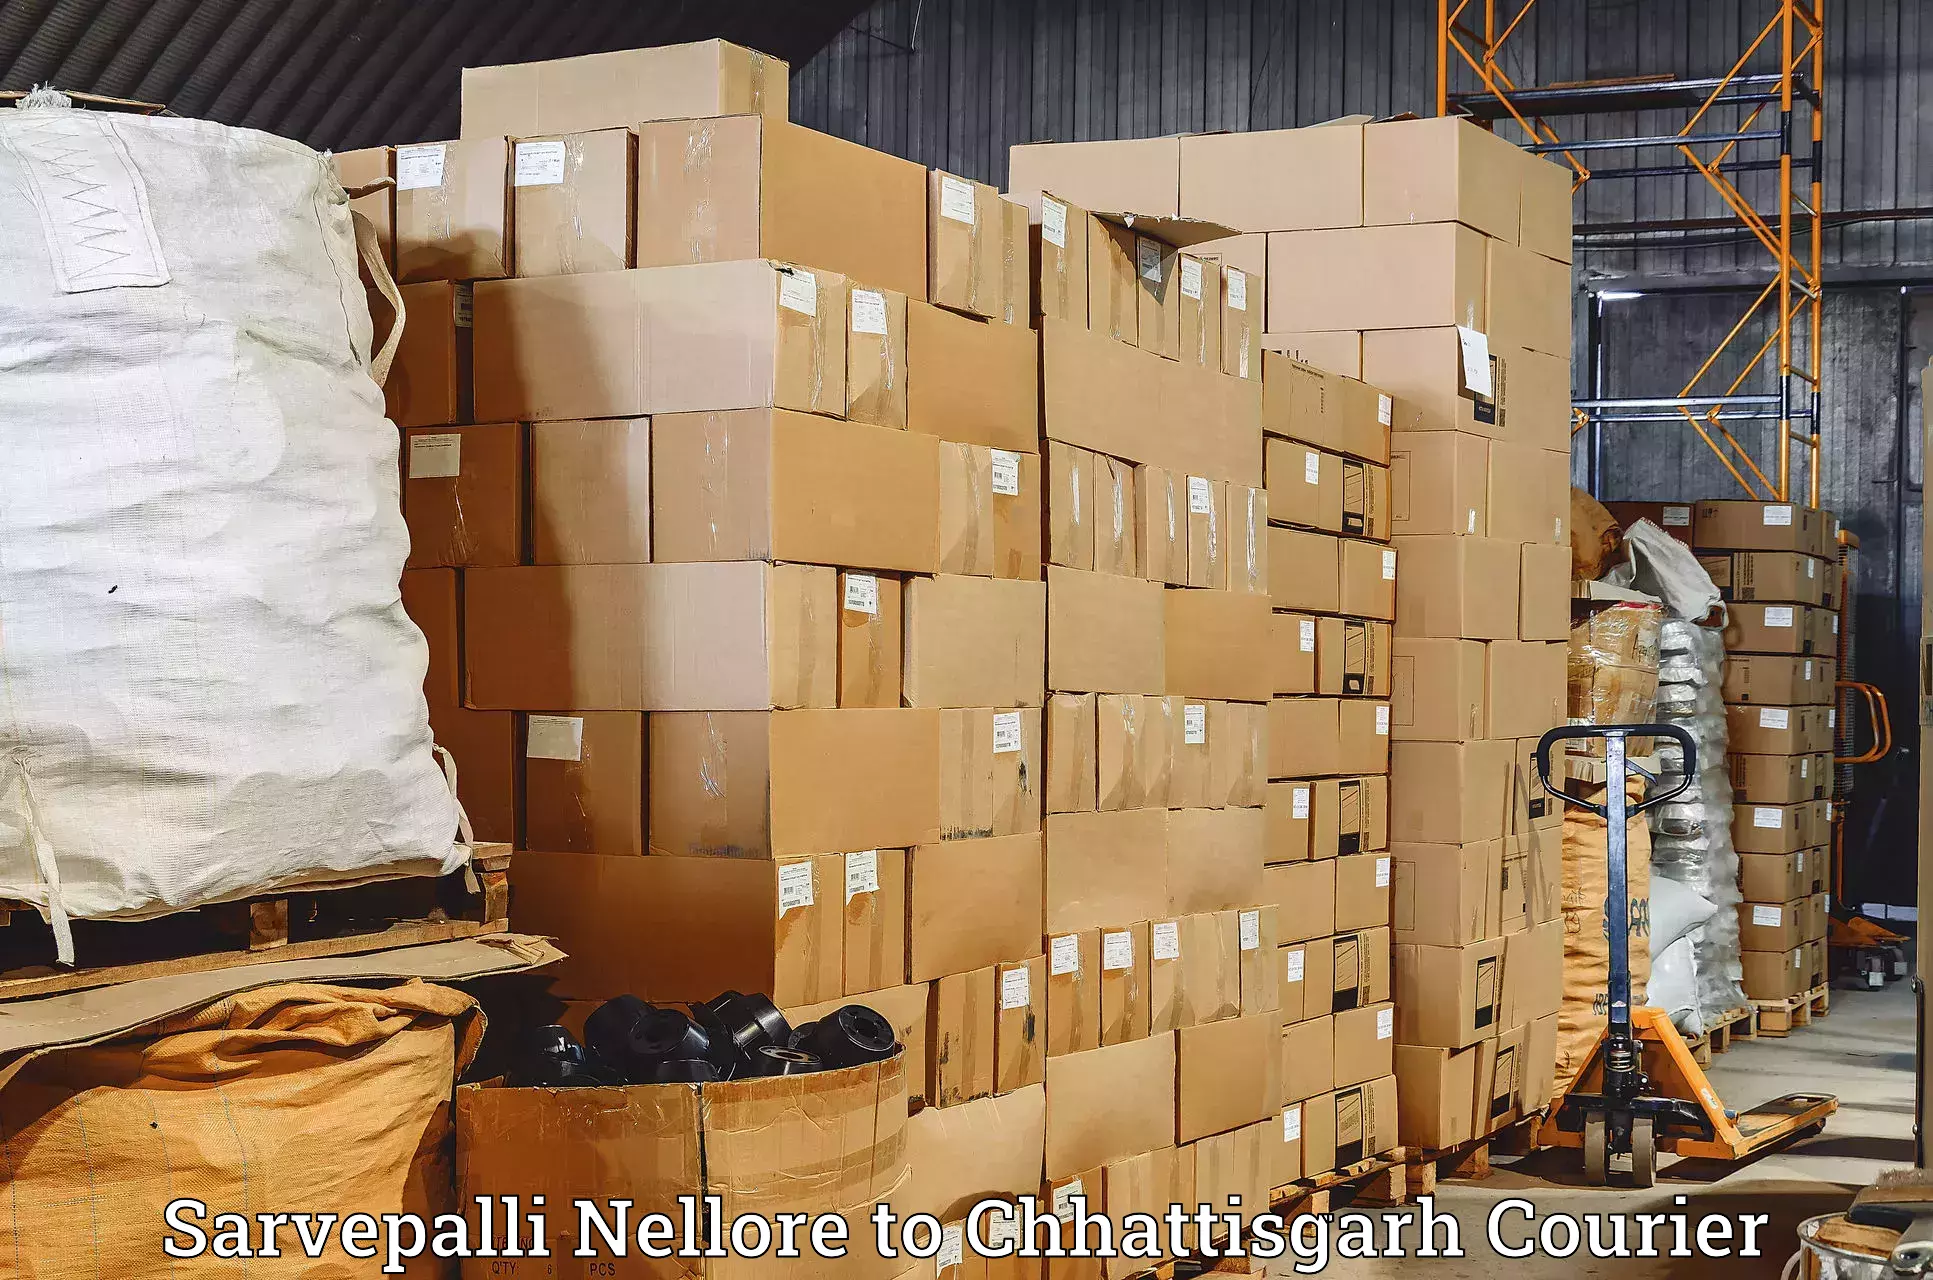 Nationwide delivery network Sarvepalli Nellore to Berla